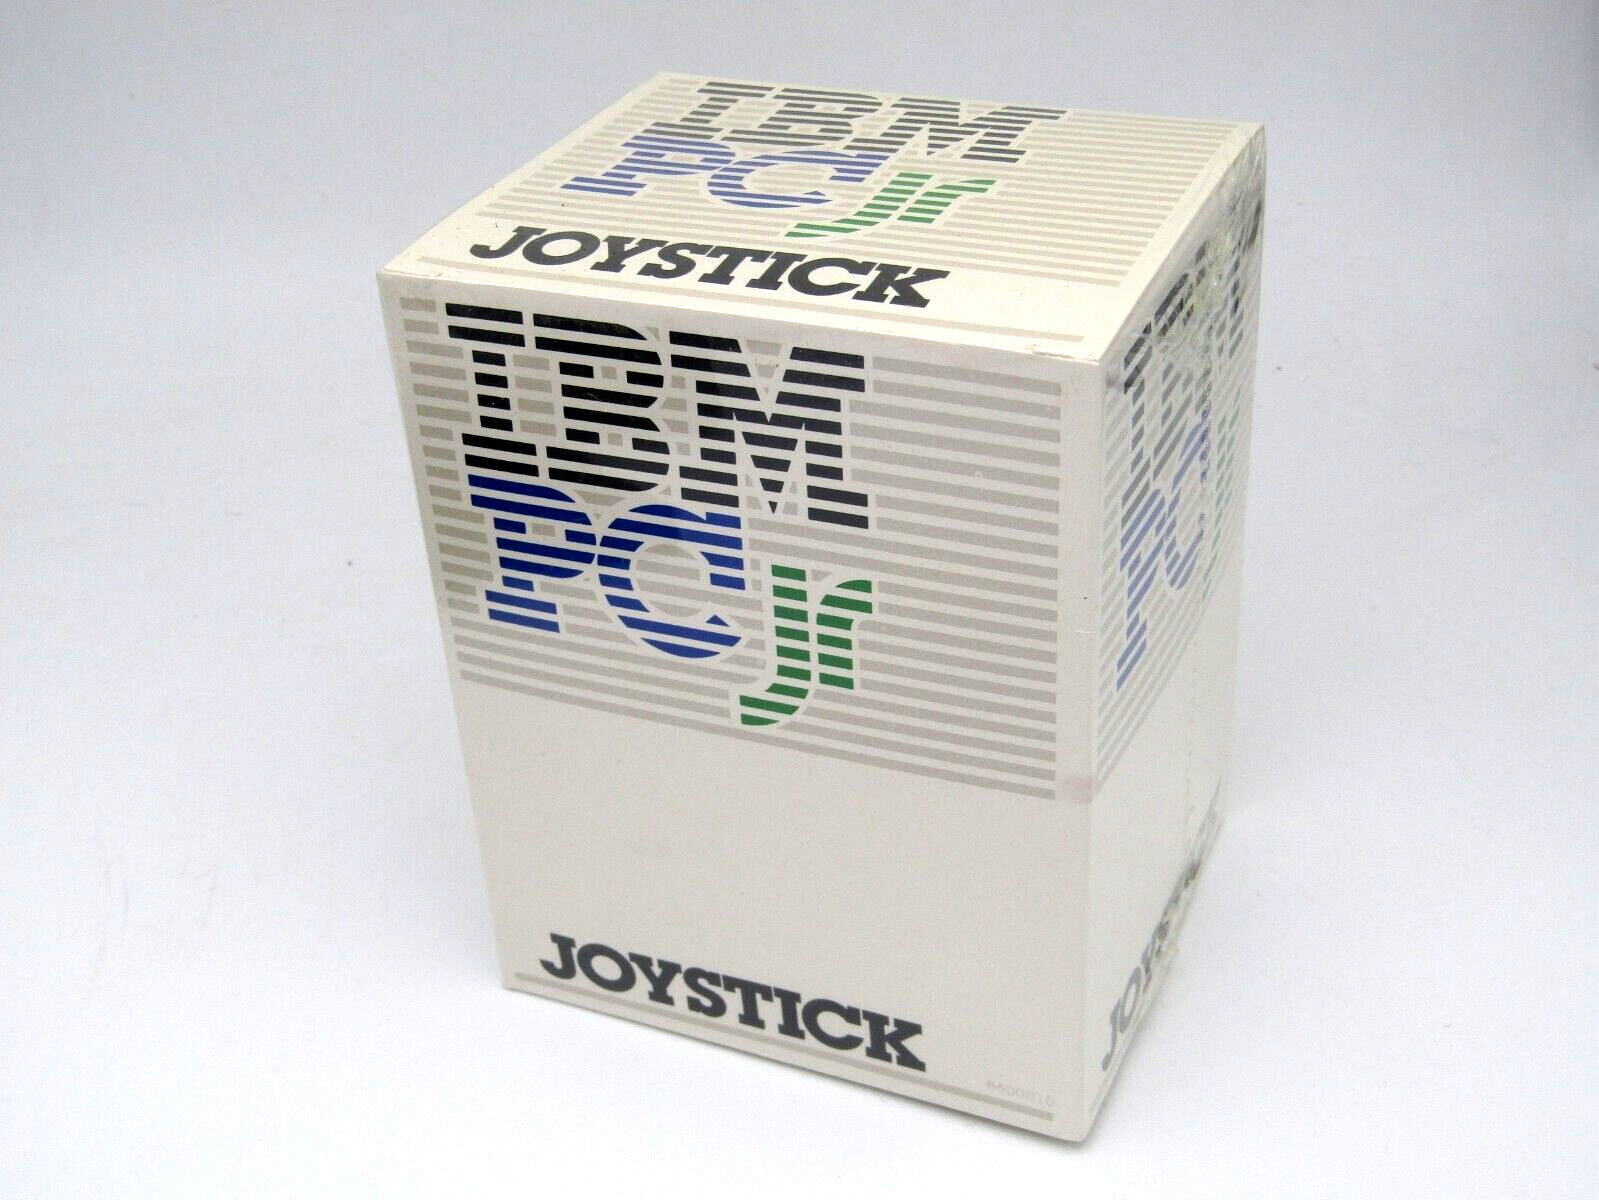 IBM PC jr Joystick  Computer Controller for Gaming Vintage  PCjr  * NEW SEALED *